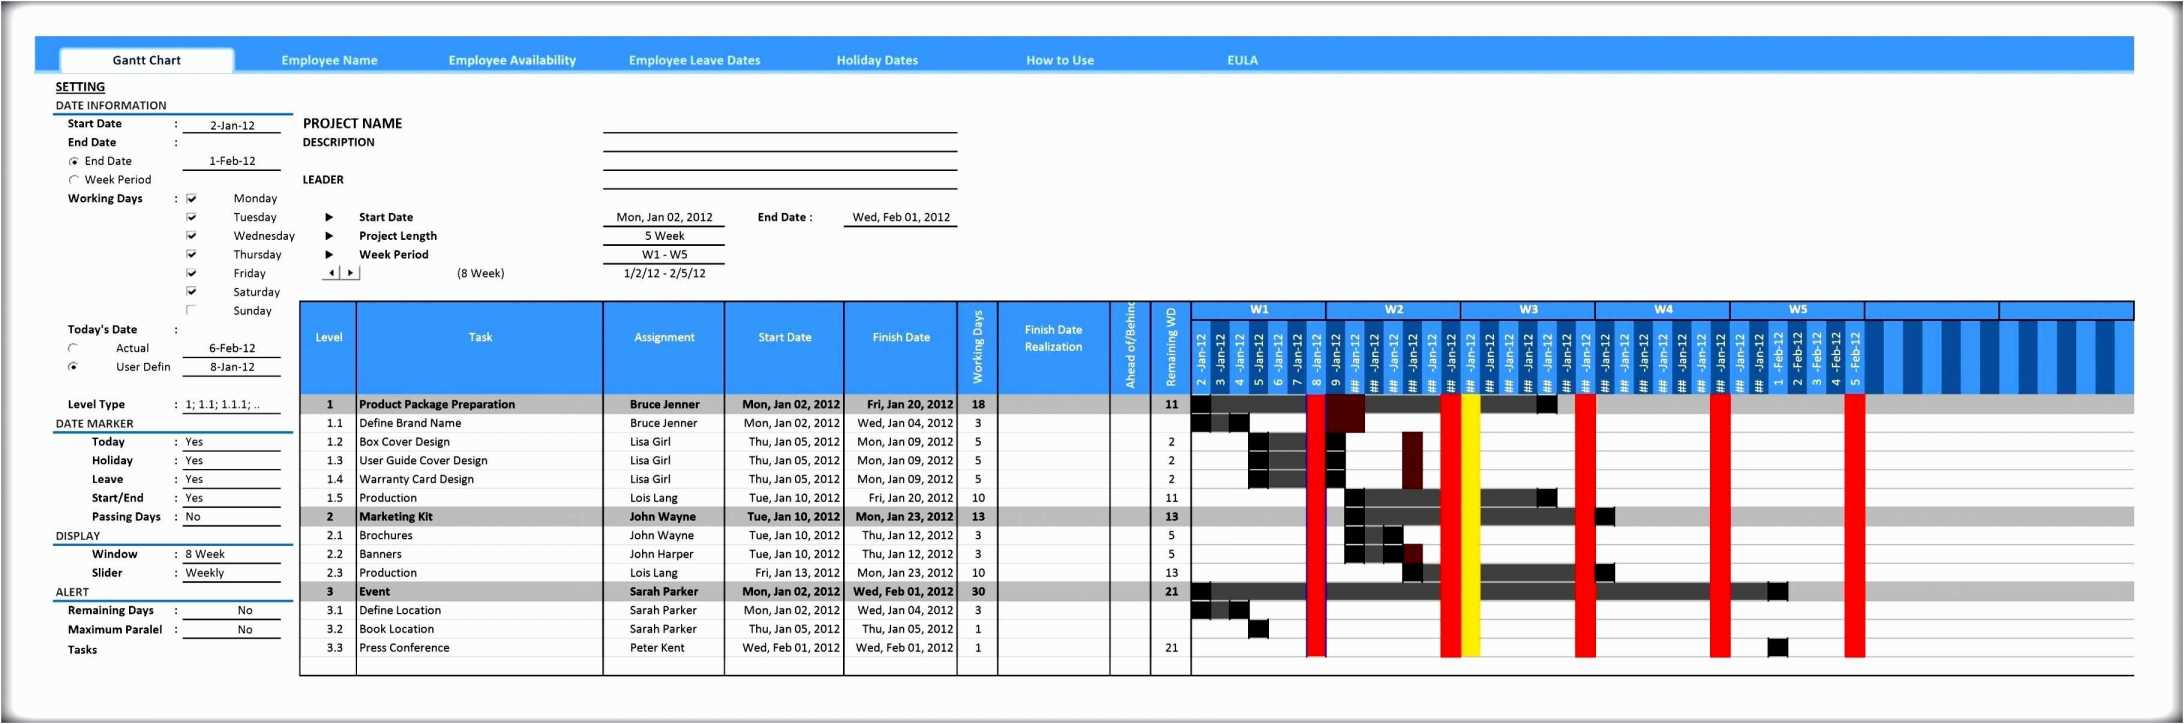 Gantt Chart Excel Template Gantt Chart Template Excel Unique Gantt with Gantt Chart Template For Excel